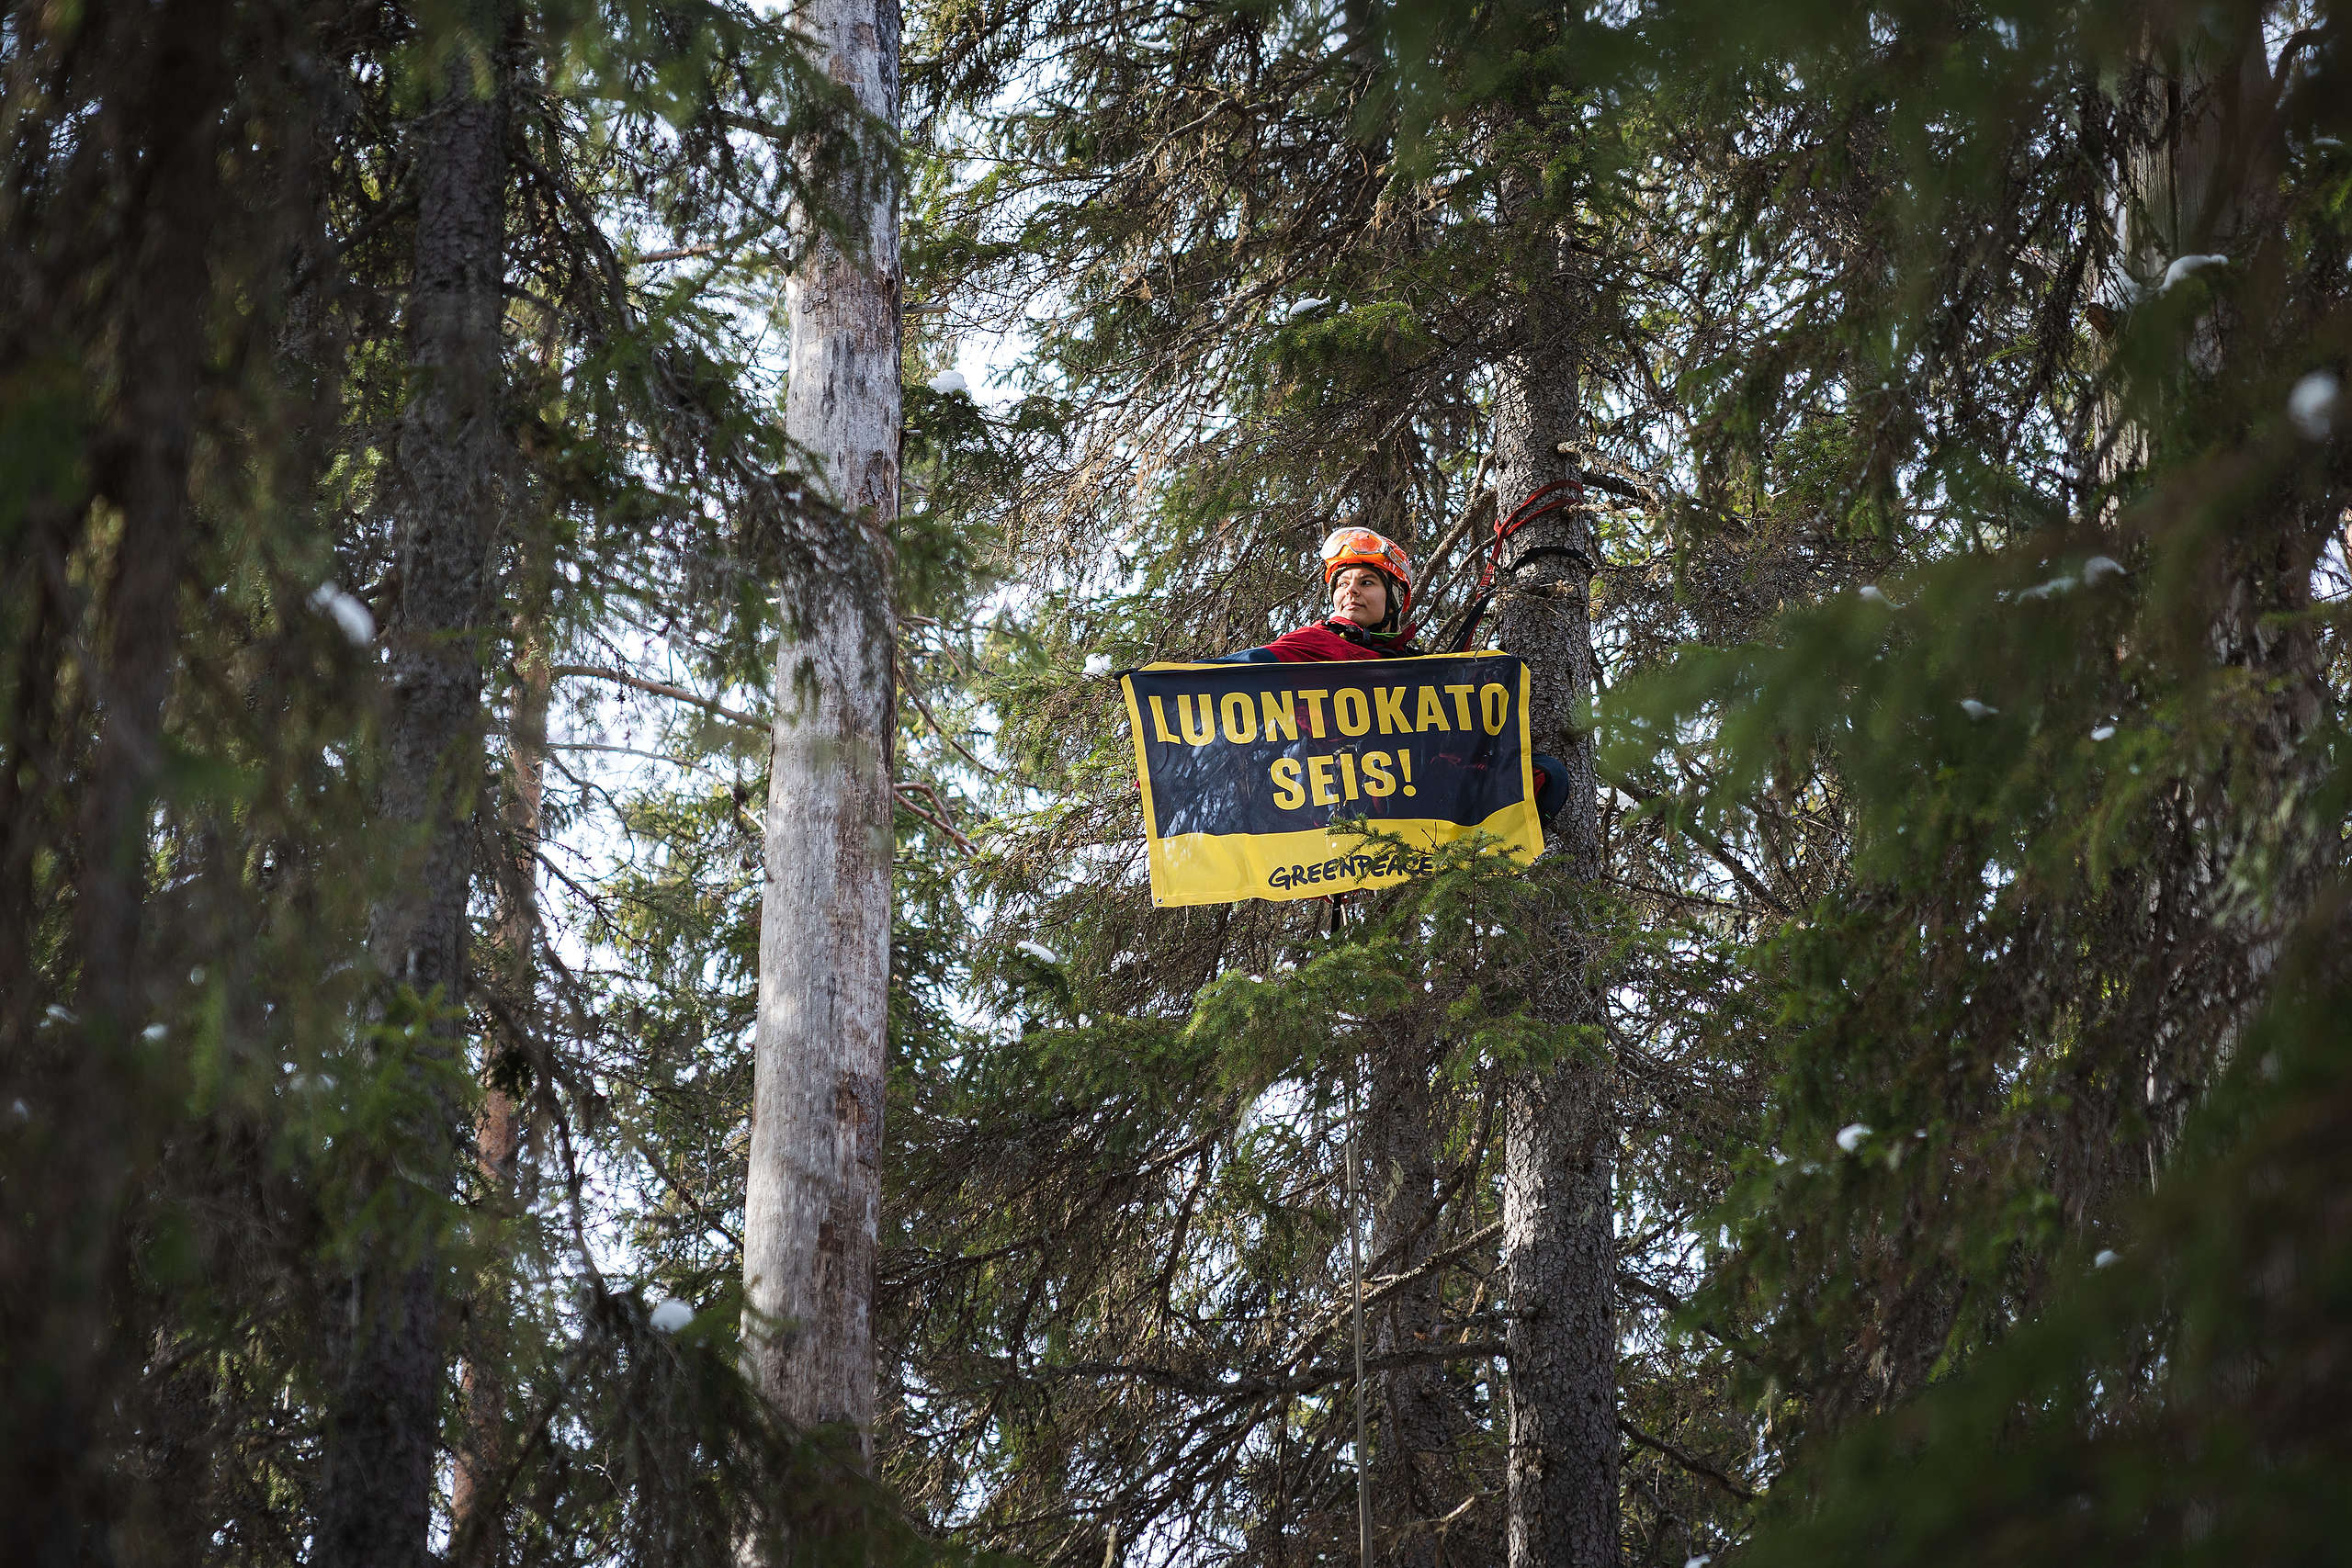 Aktivisti roikkuu kiipeilyvälineiden avulla korkealla kuusessa banderollin kanssa, jossa lukee "Luontokato seis!".